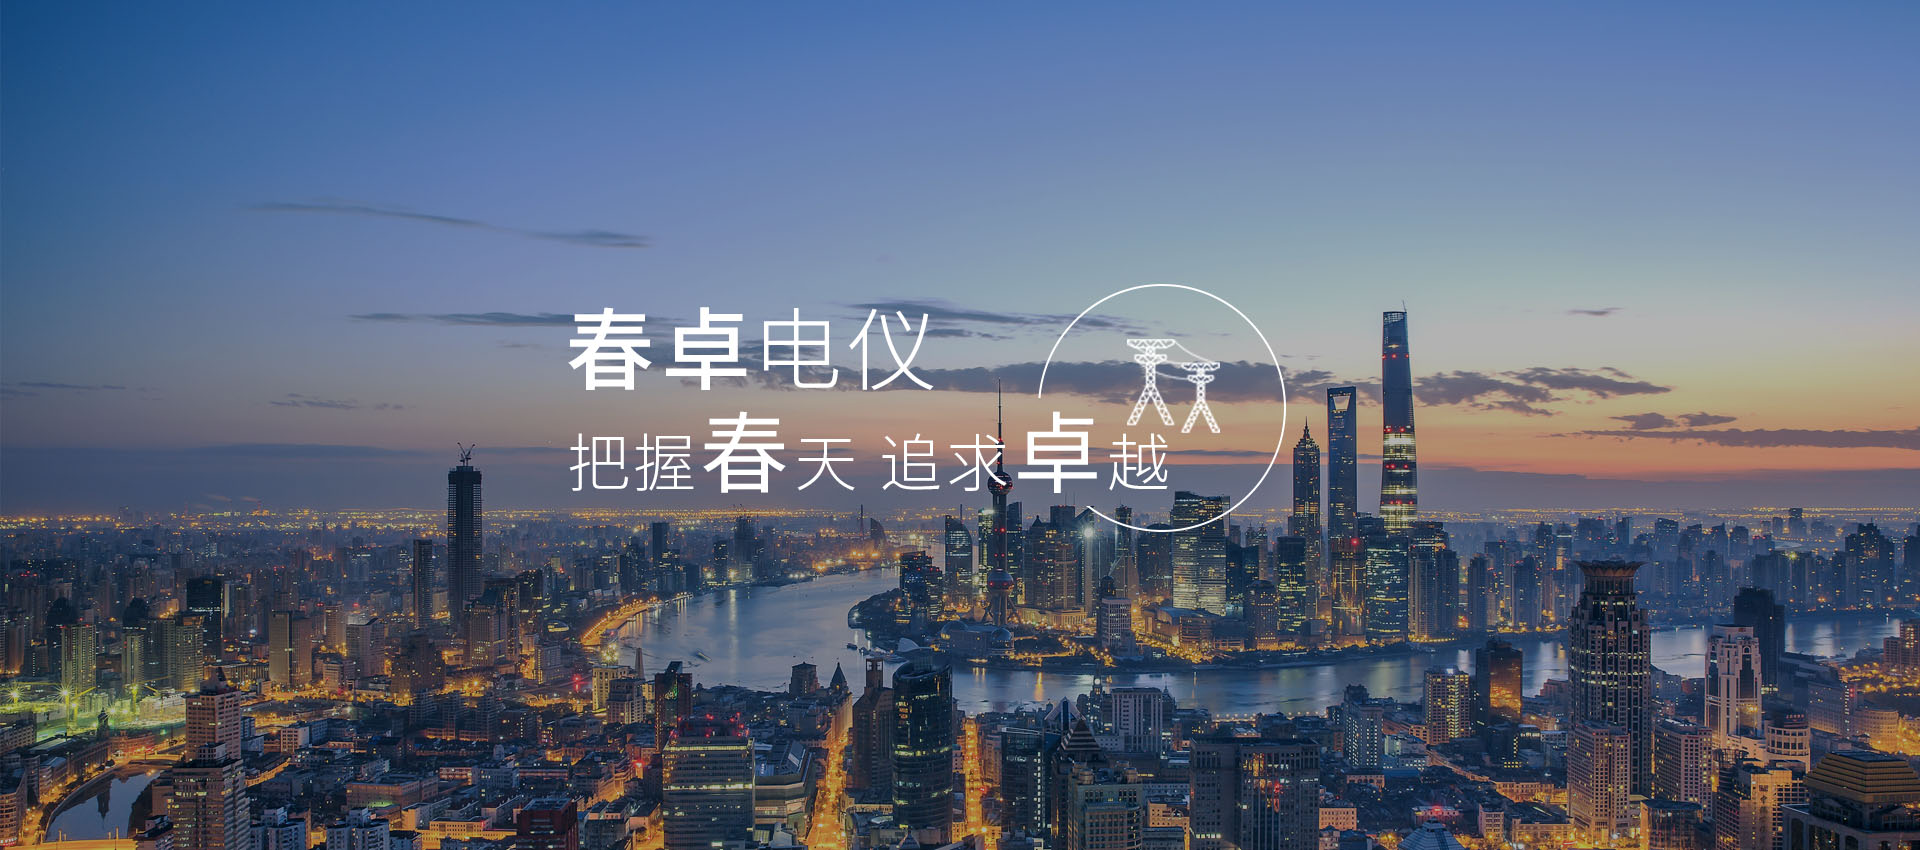 上海春卓電器儀表有限公司